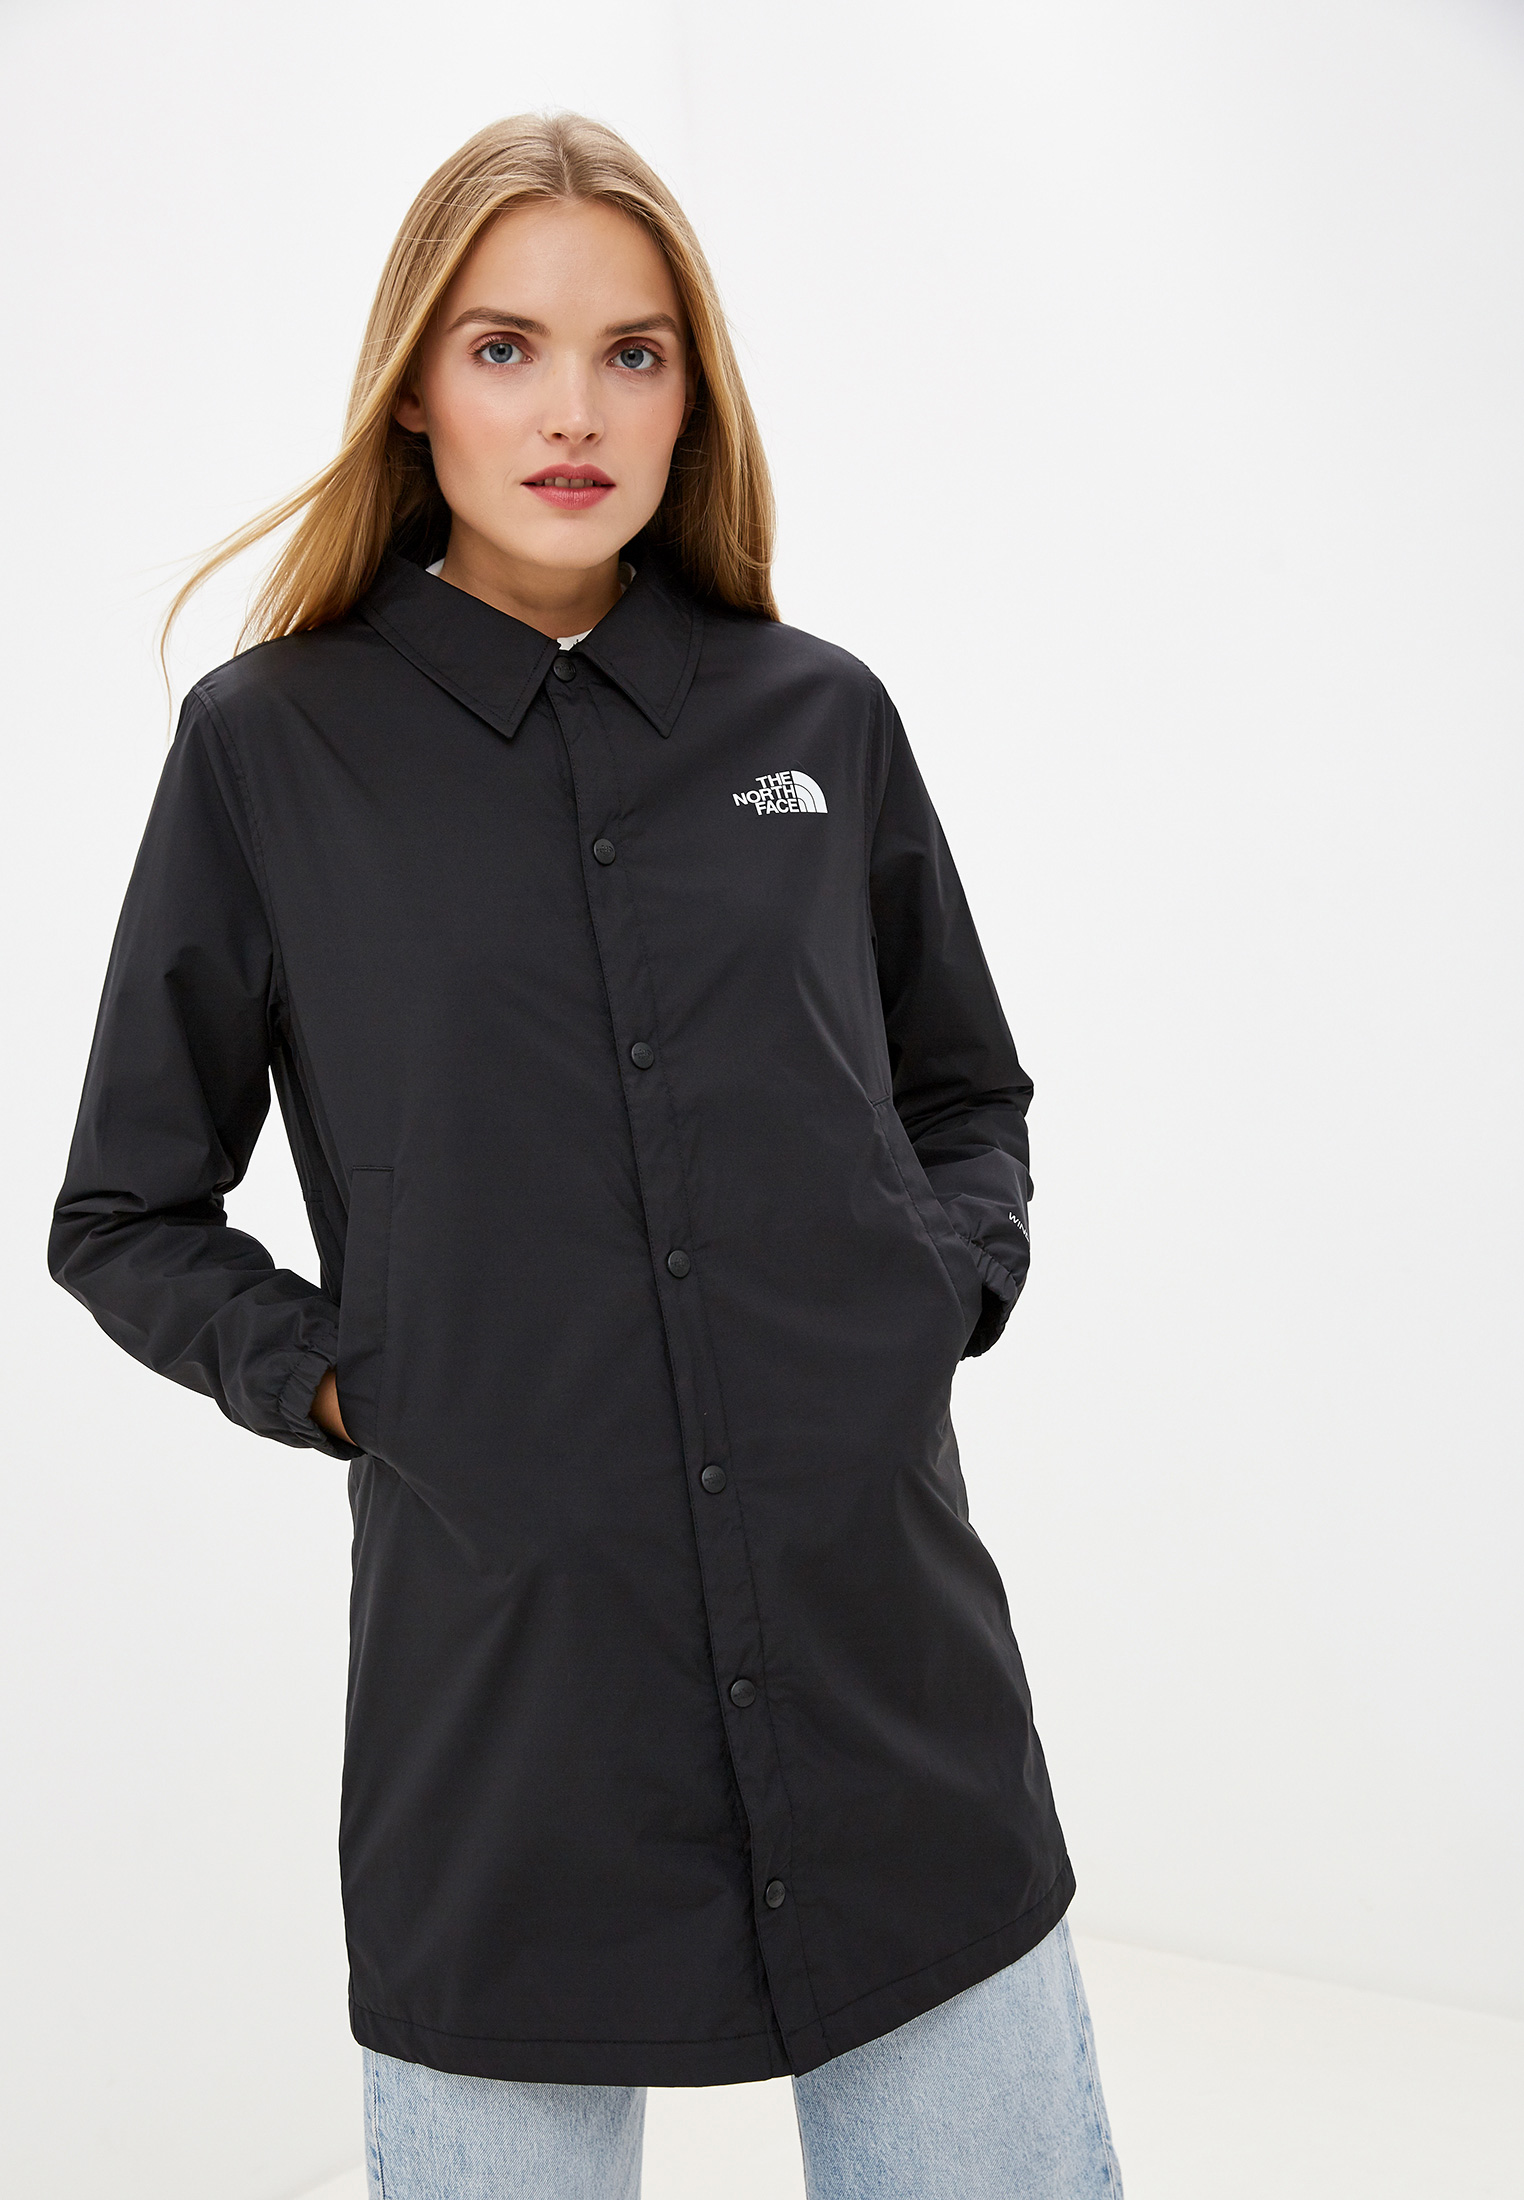 Куртка The North Face W GRAPHIC COACH JKT, цвет: черный, TH016EWFQLX8 —  купить в интернет-магазине Lamoda